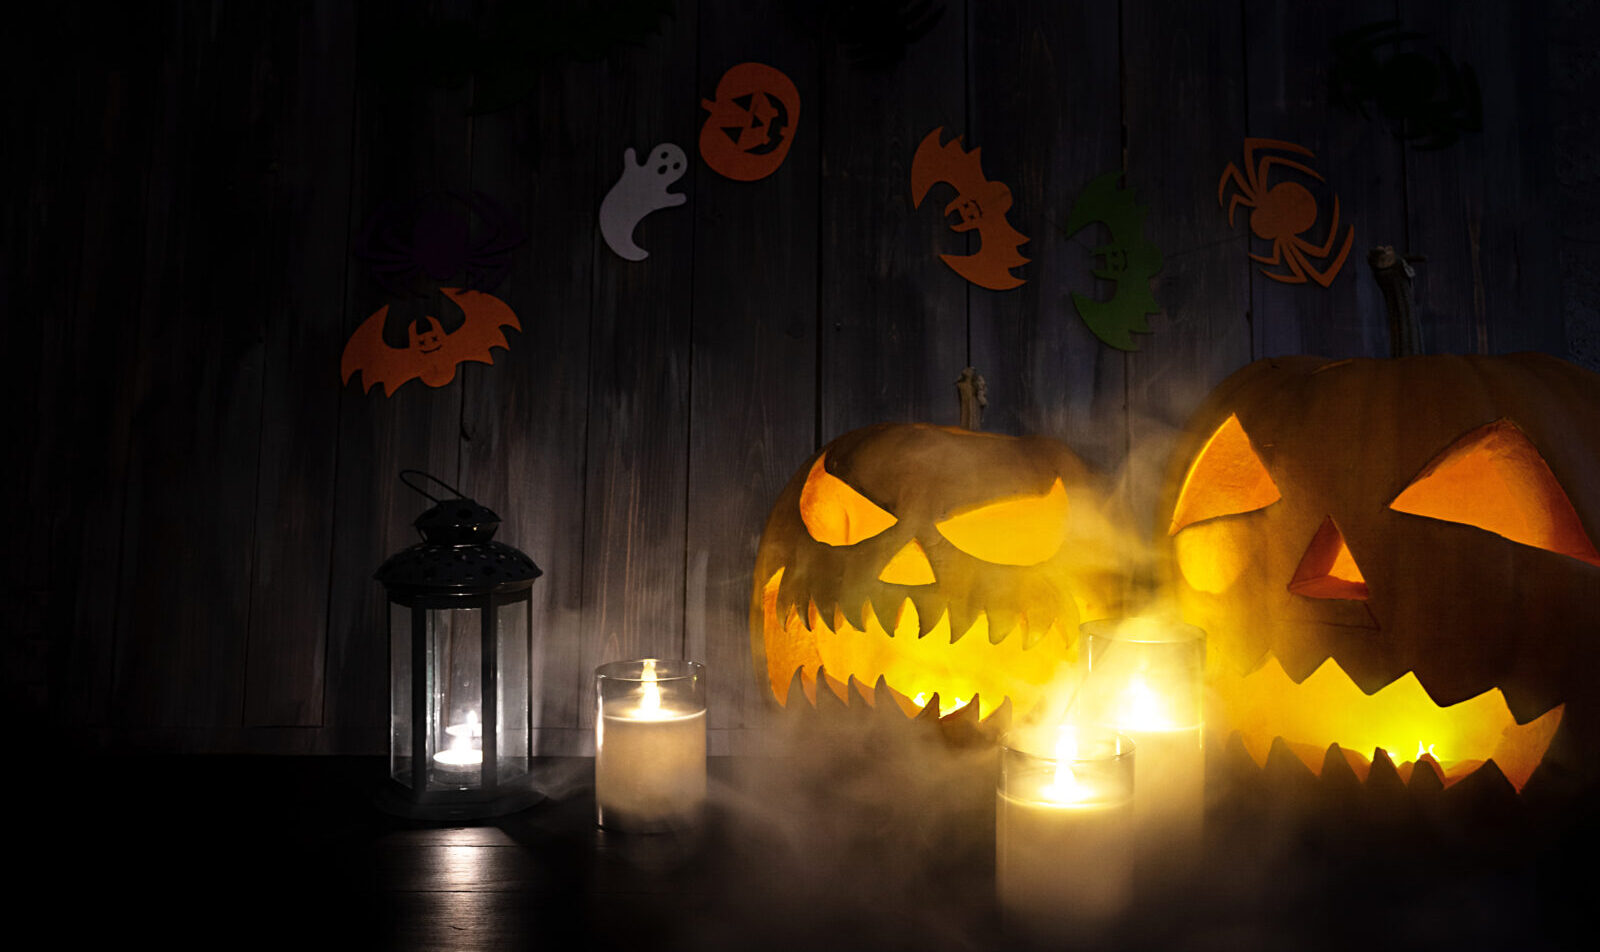 Halloween background with pumpkin head lantern and candles. Halloween pumpkin Jack-o-Lantern